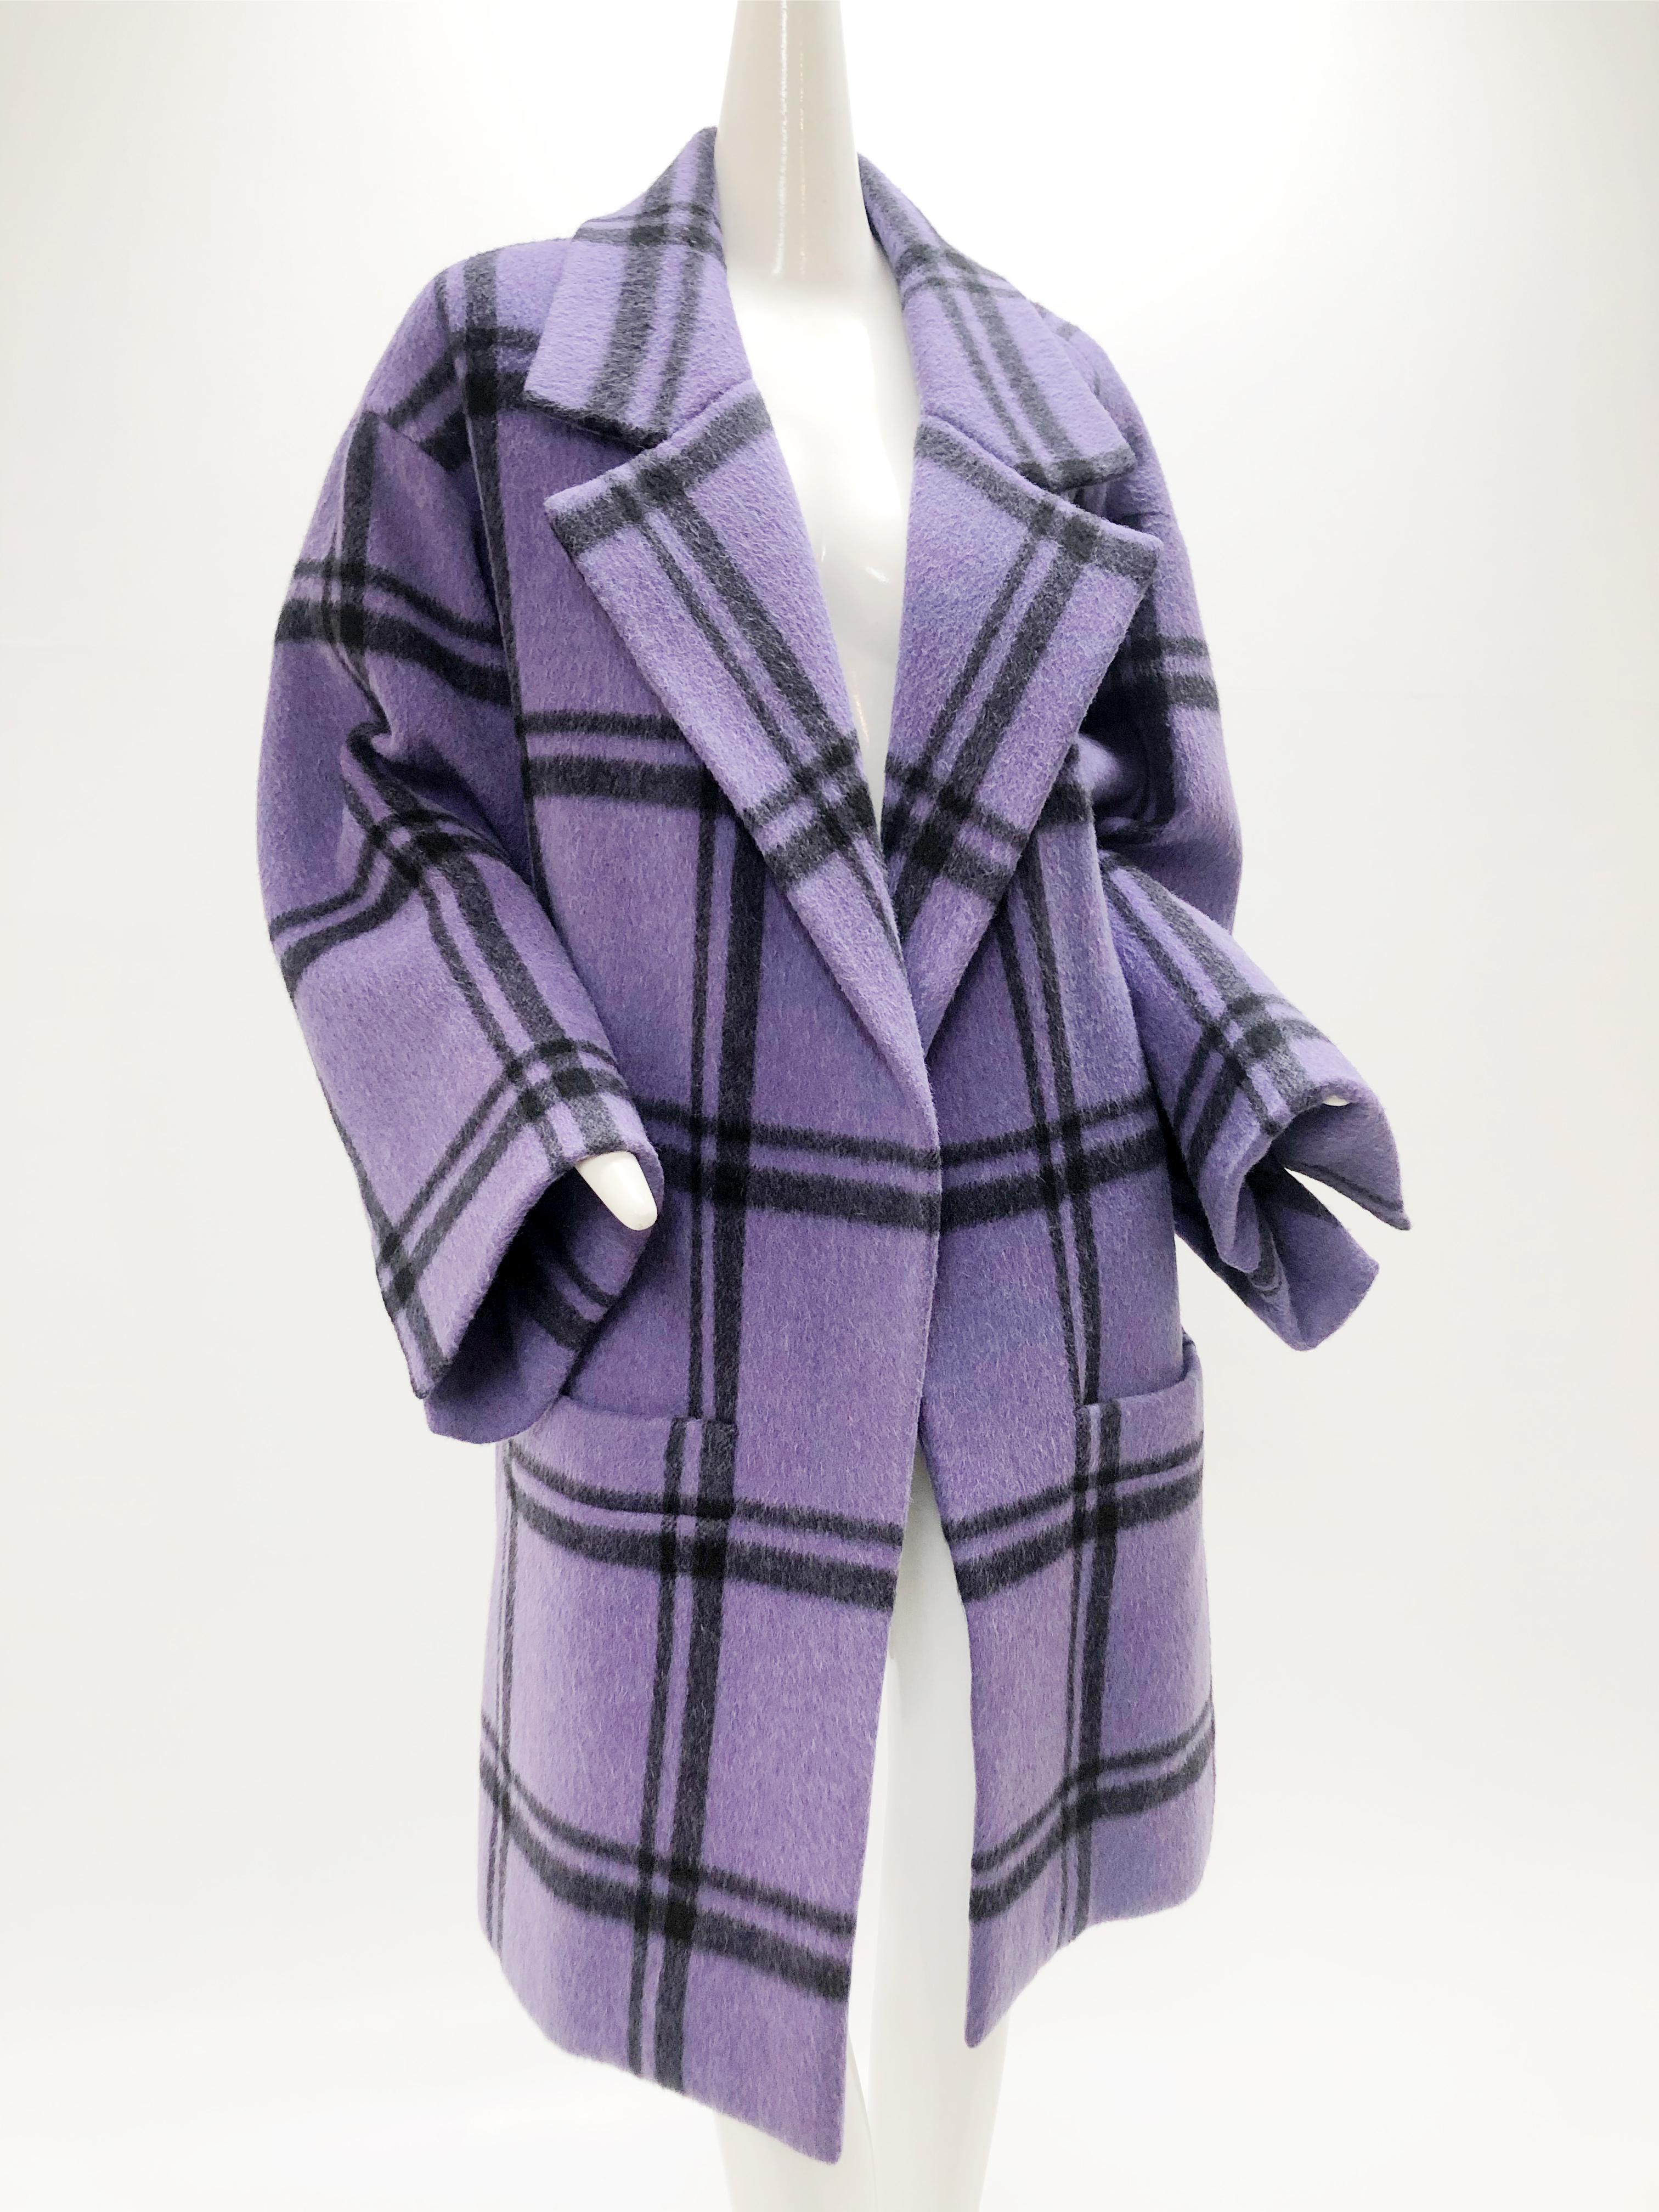 Un fabuleux manteau swing couture 1985 Marc Bohan pour Christian Dior en mohair doux et soyeux (ne gratte pas du tout) violet et noir à carreaux de fenêtre : Pas de fermetures avec des poches plaquées à l'avant à la ligne d'ourlet. Doublure en soie